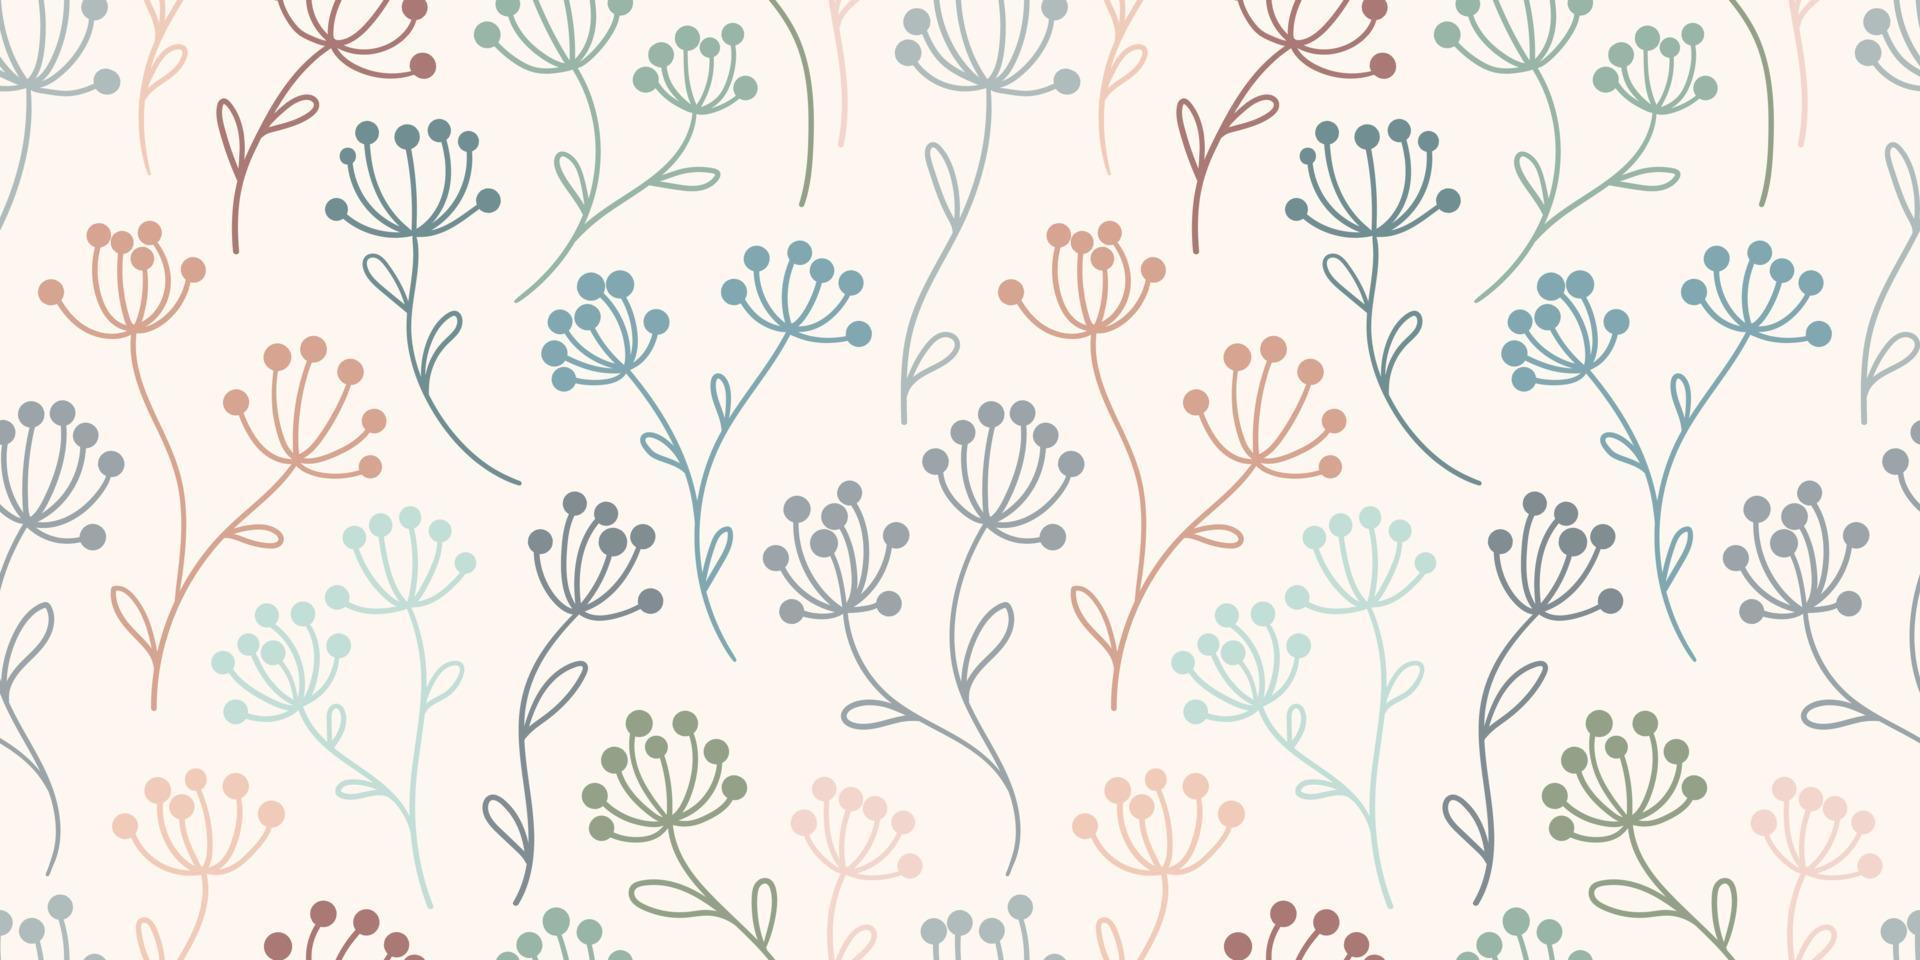 Pastell florales Vektormuster, nahtloser Hintergrund mit Blumen, endlose Wiederholung vektor